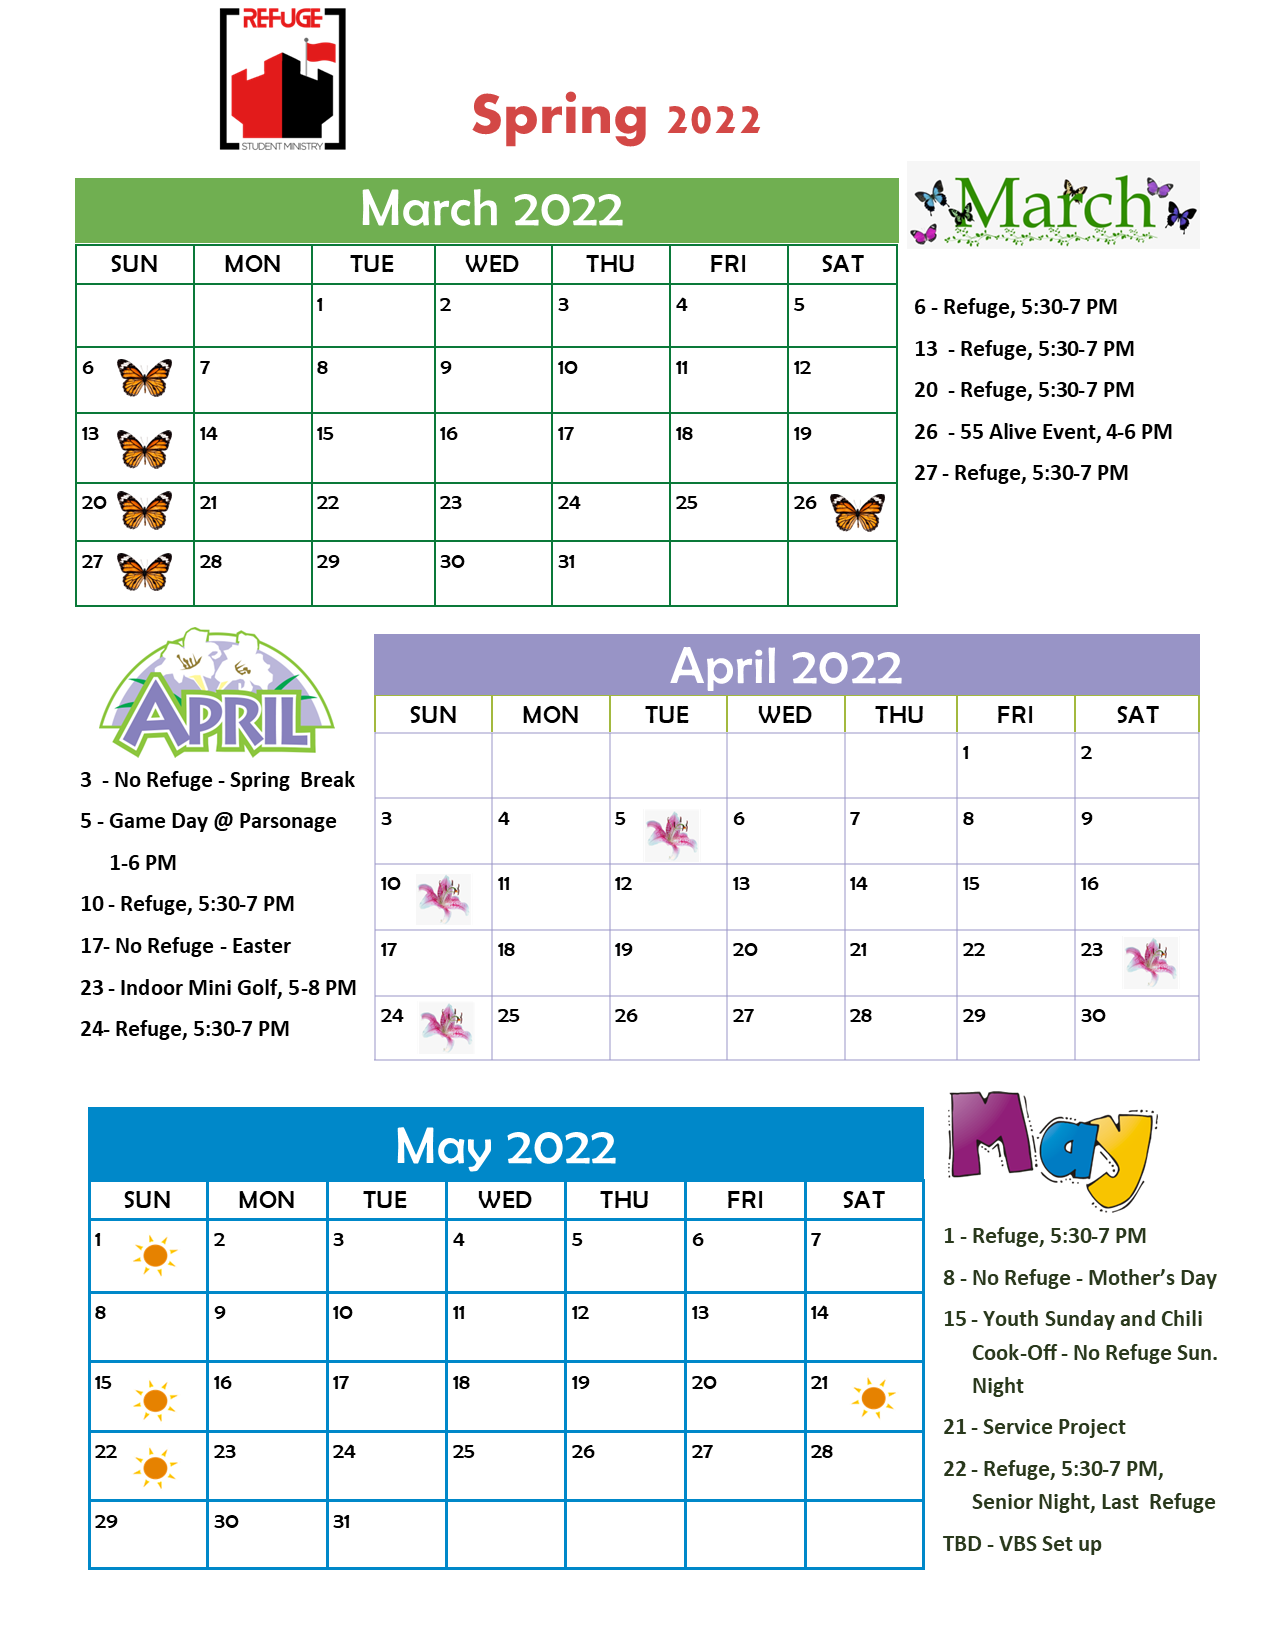 REFUGE Spring 2022 calendar